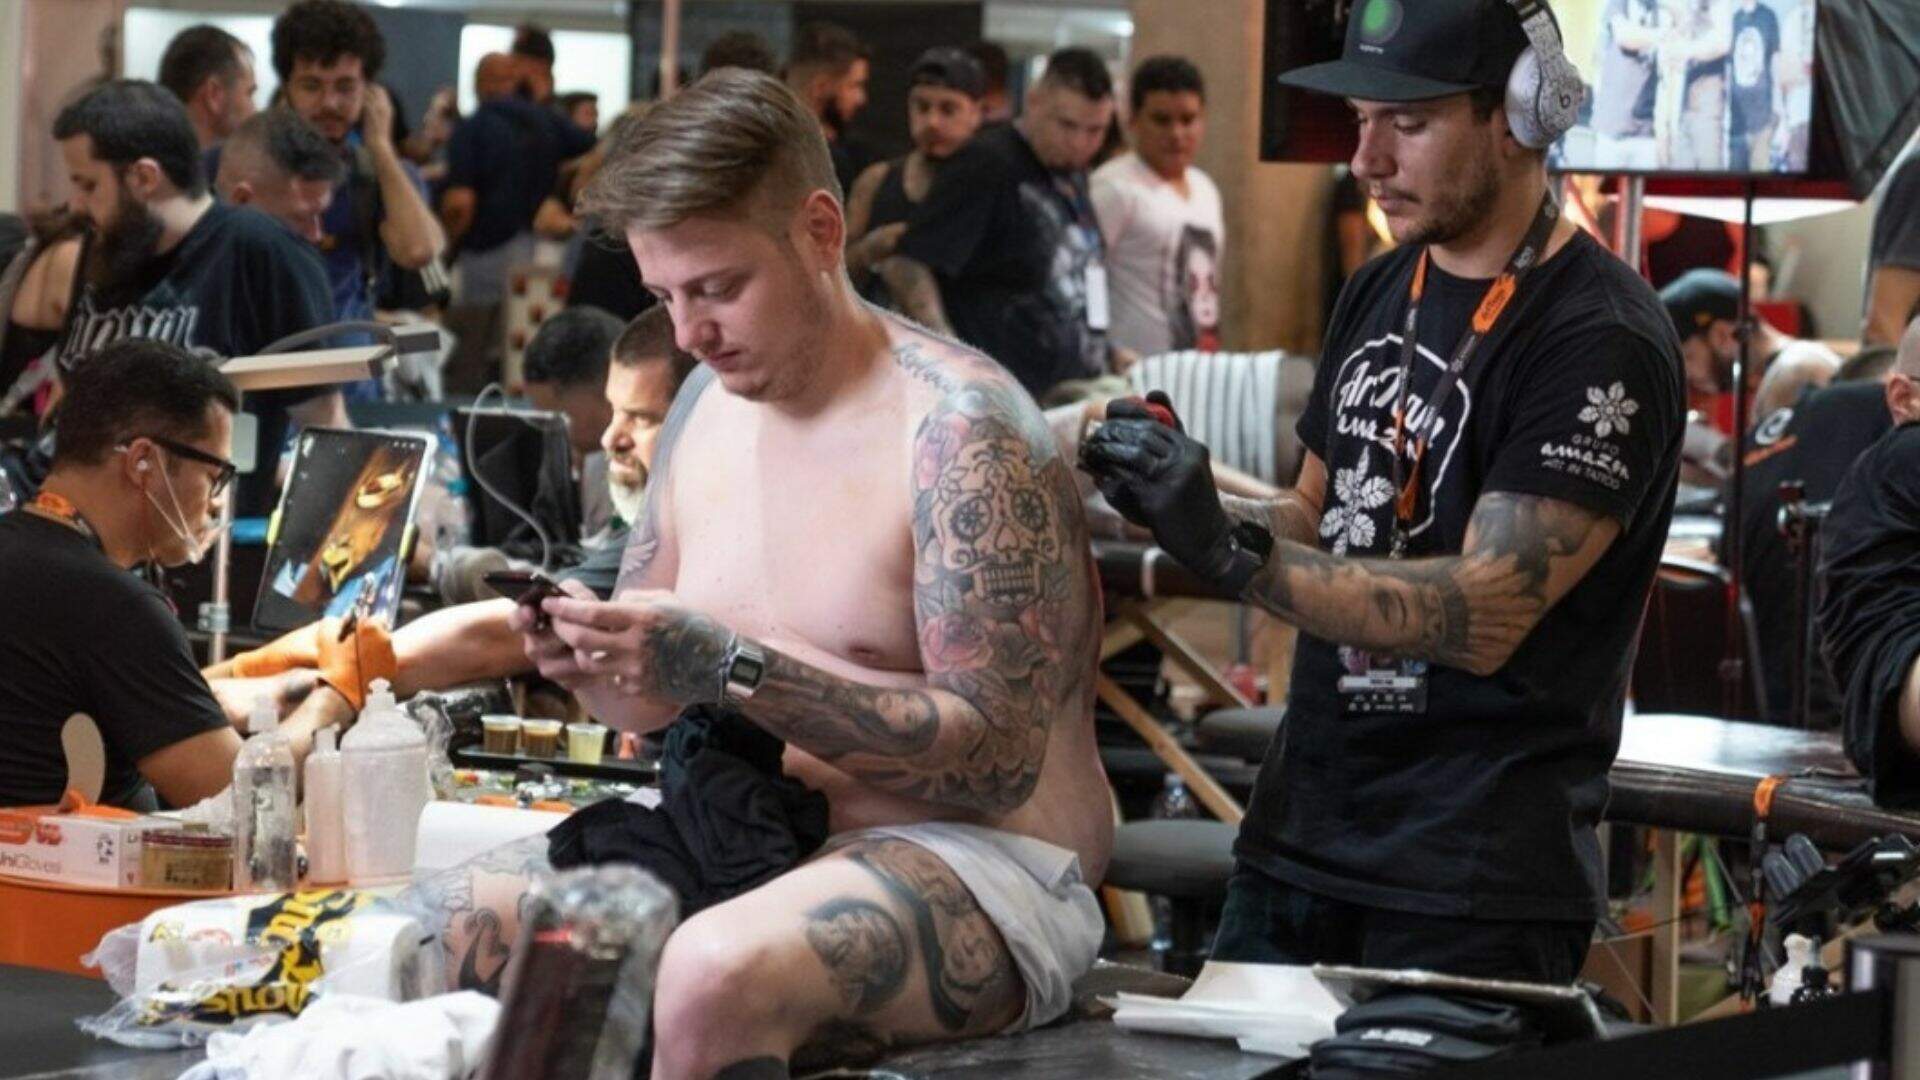 Por conta da pandemia, a última edição presencial da Tattoo Week em SP aconteceu em 2019 